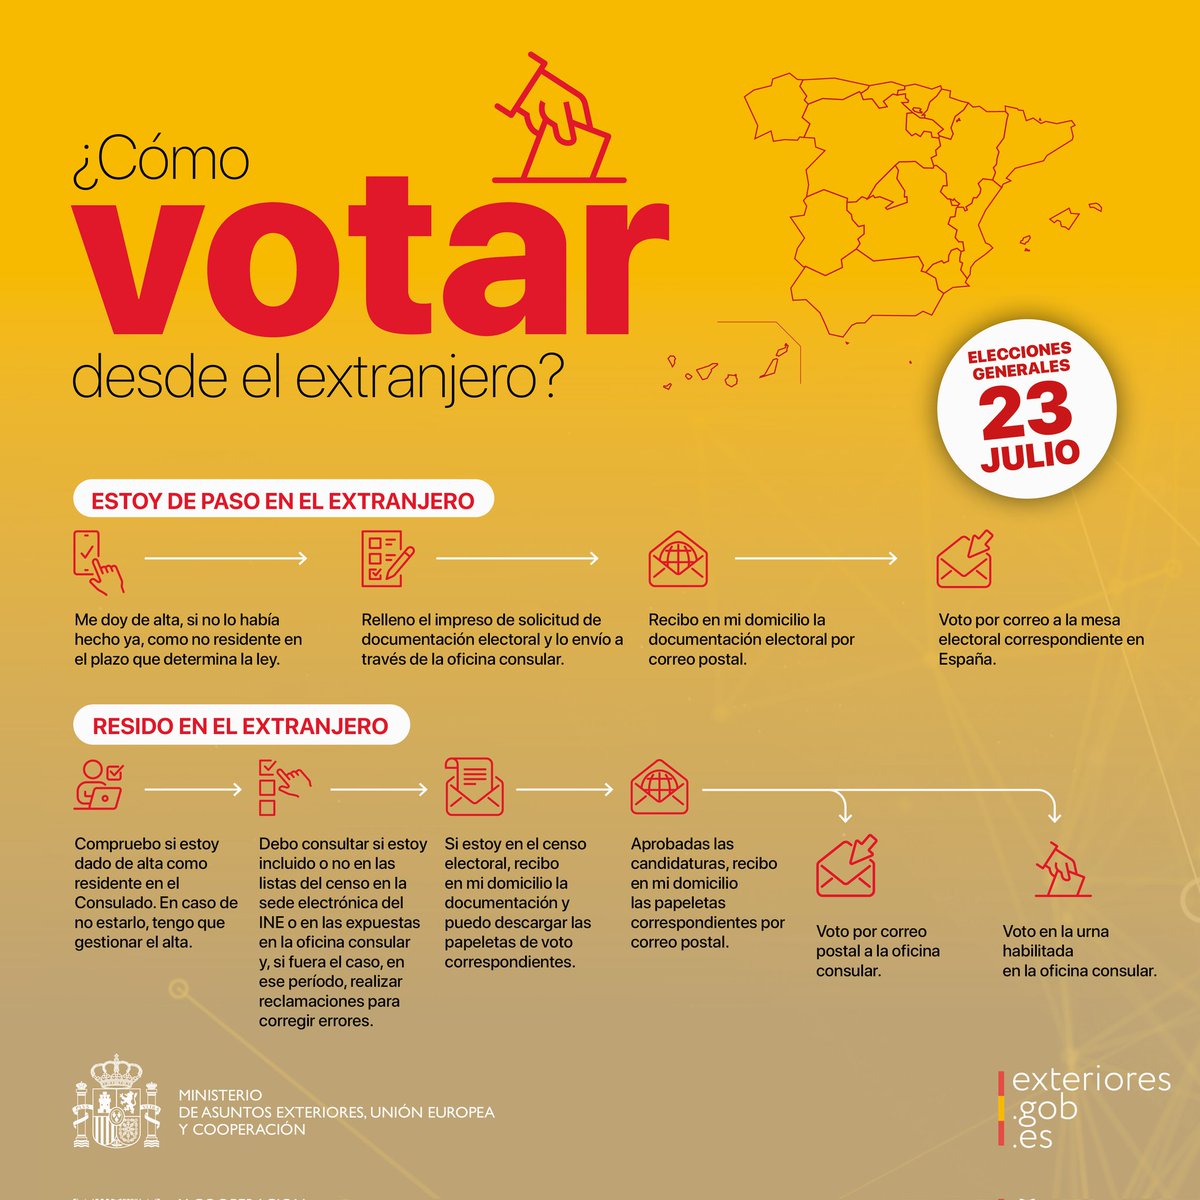 #VotoCERA si eres español residente en nuestra circunscripción #TemporalmenteEnEspaña durante la convocatoria de #EleccionesGenerales del #23J puedes #VotoporCorreo en España igual que los residentes en territorio nacional 
Plazo para enviar el voto hasta el 20 de julio.